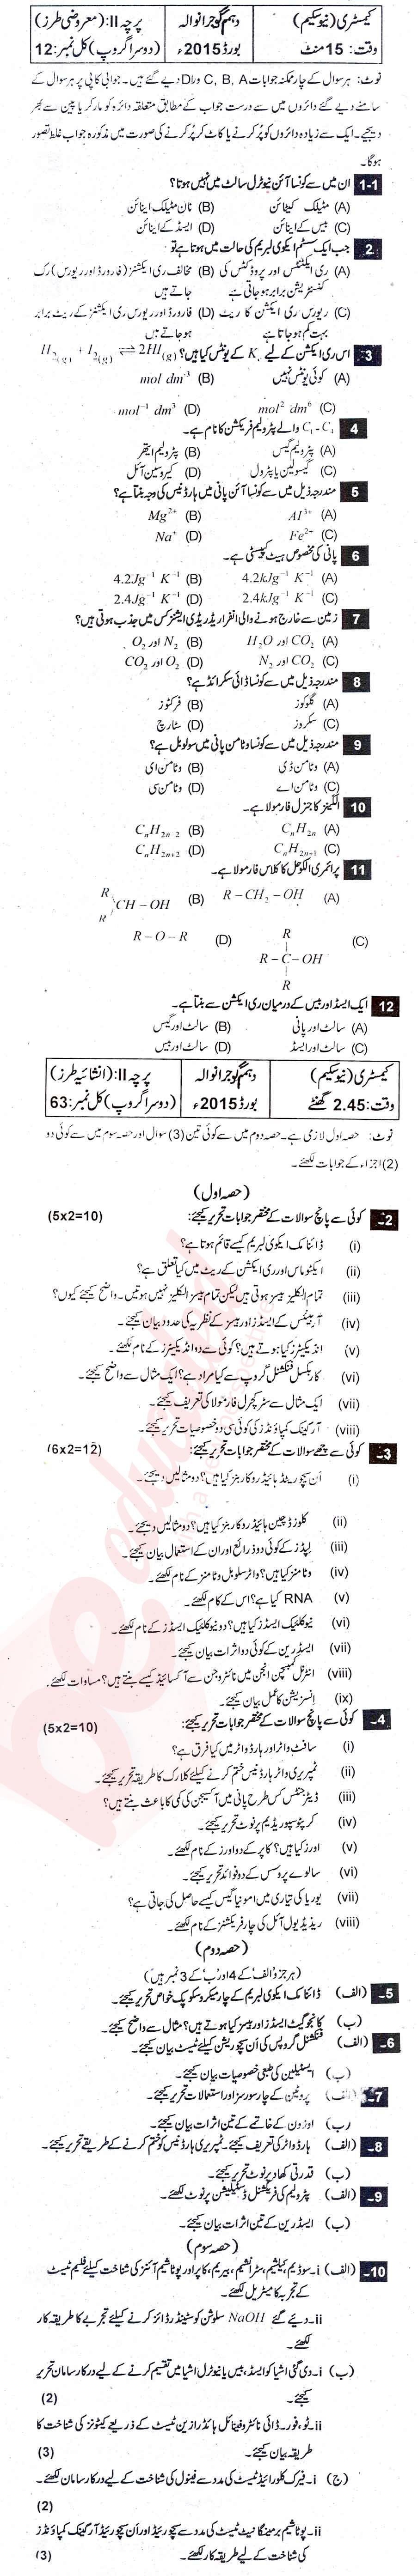 Chemistry 10th Urdu Medium Past Paper Group 2 BISE Gujranwala 2015